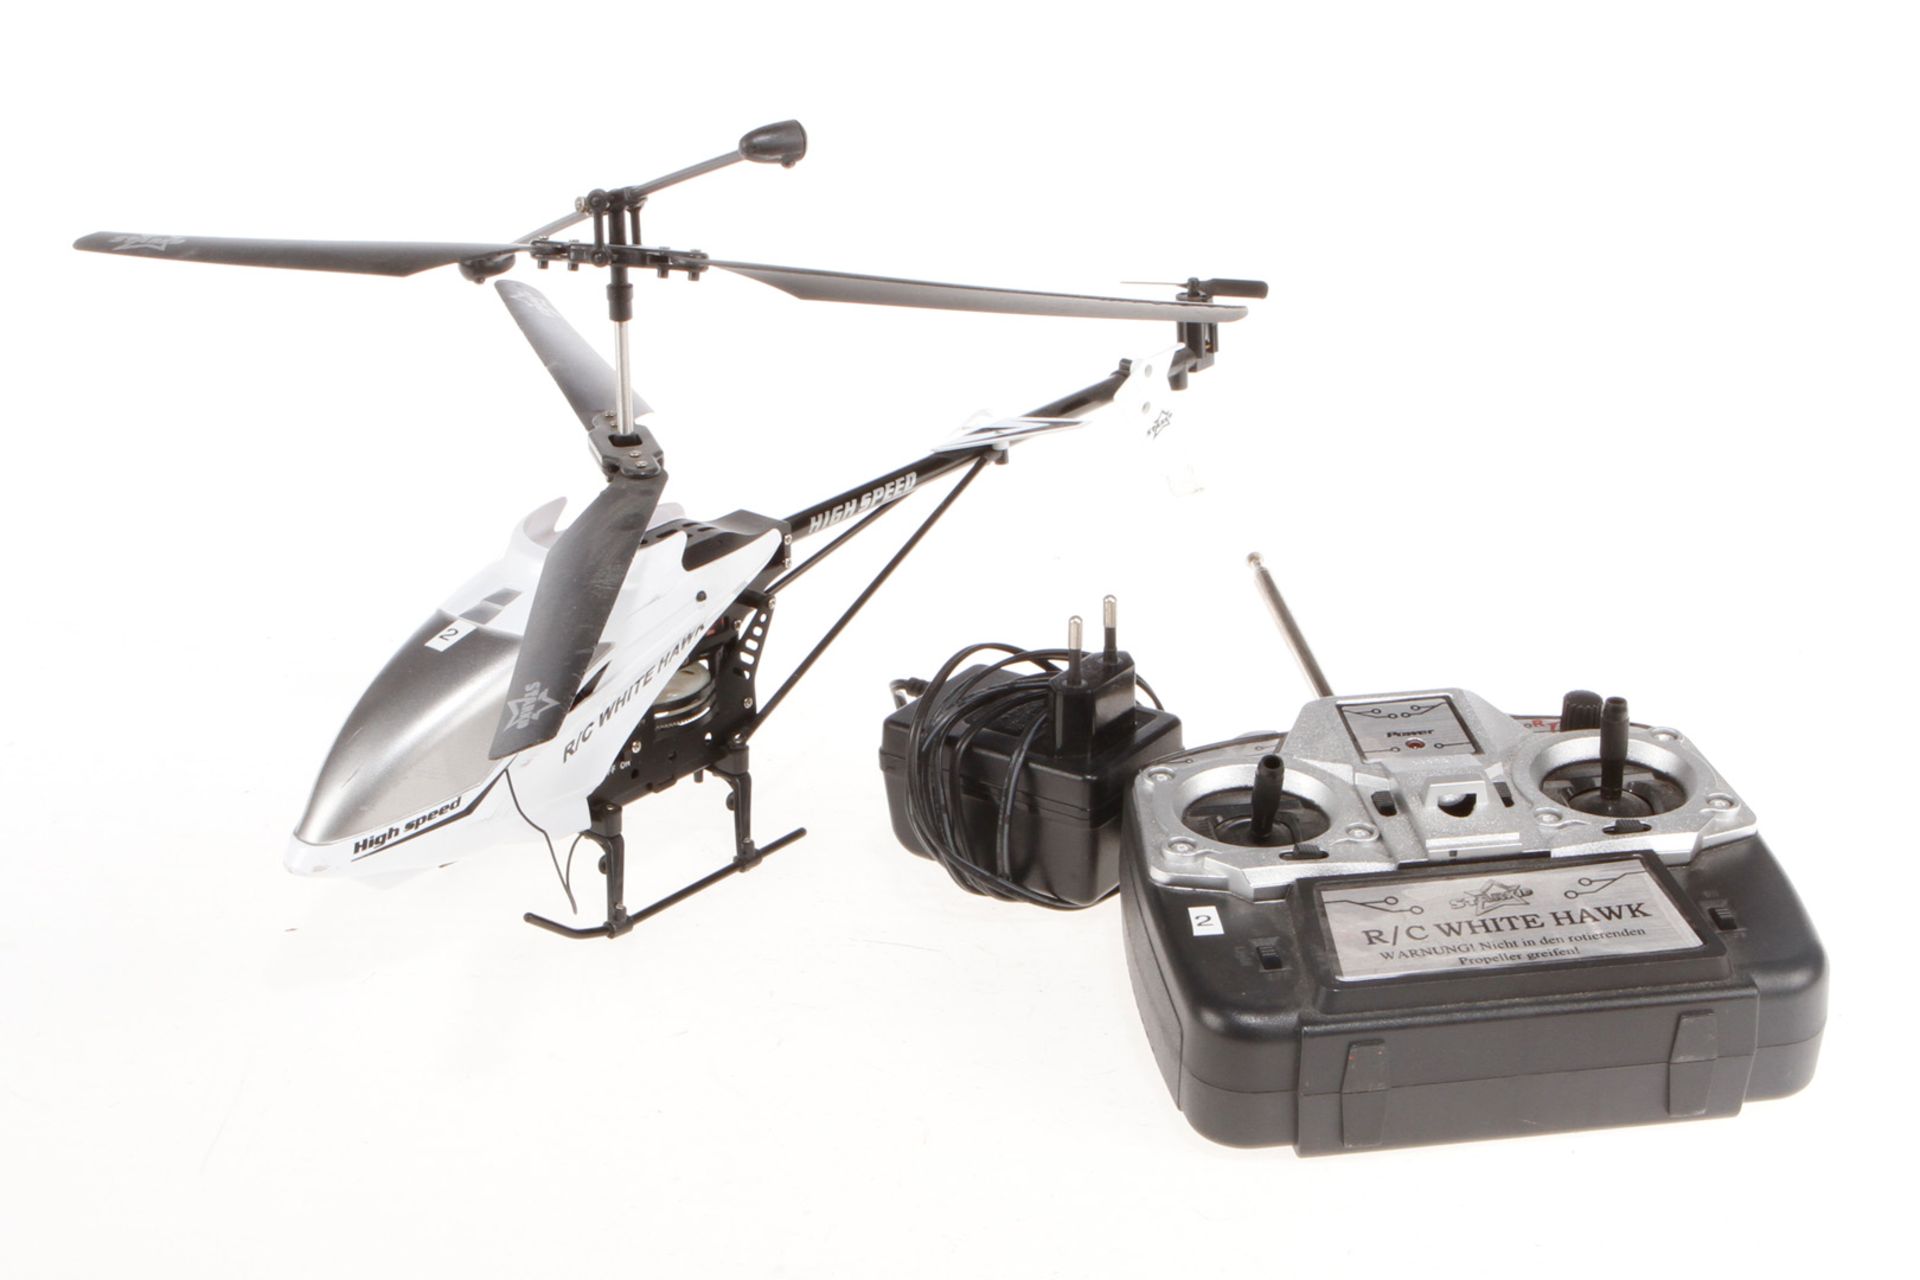 Starkid Helikopter R/C Whitehawk, mit Akku, Ladegerät und Funkfernbedienung, Alterungs- und